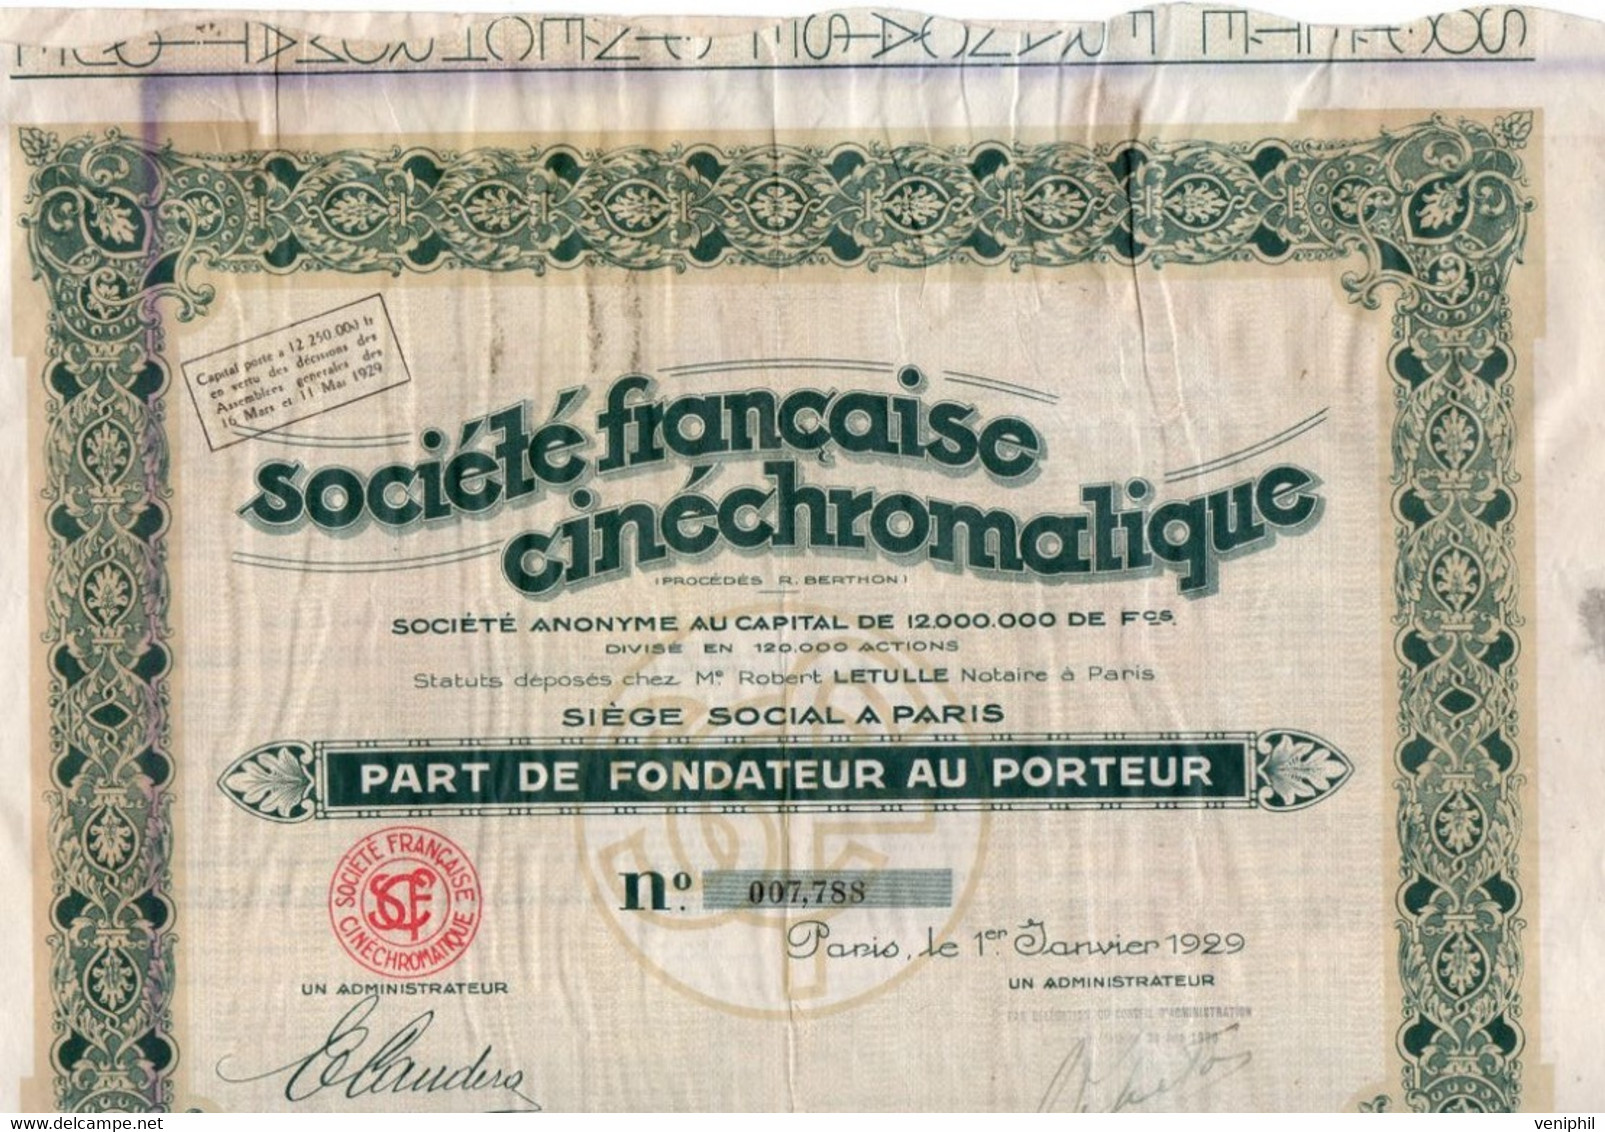 PART DE FONDATEUR -SOCIETE FRANCAISE CINECHROMATIQUE -ANNEE 1929 - Kino & Theater